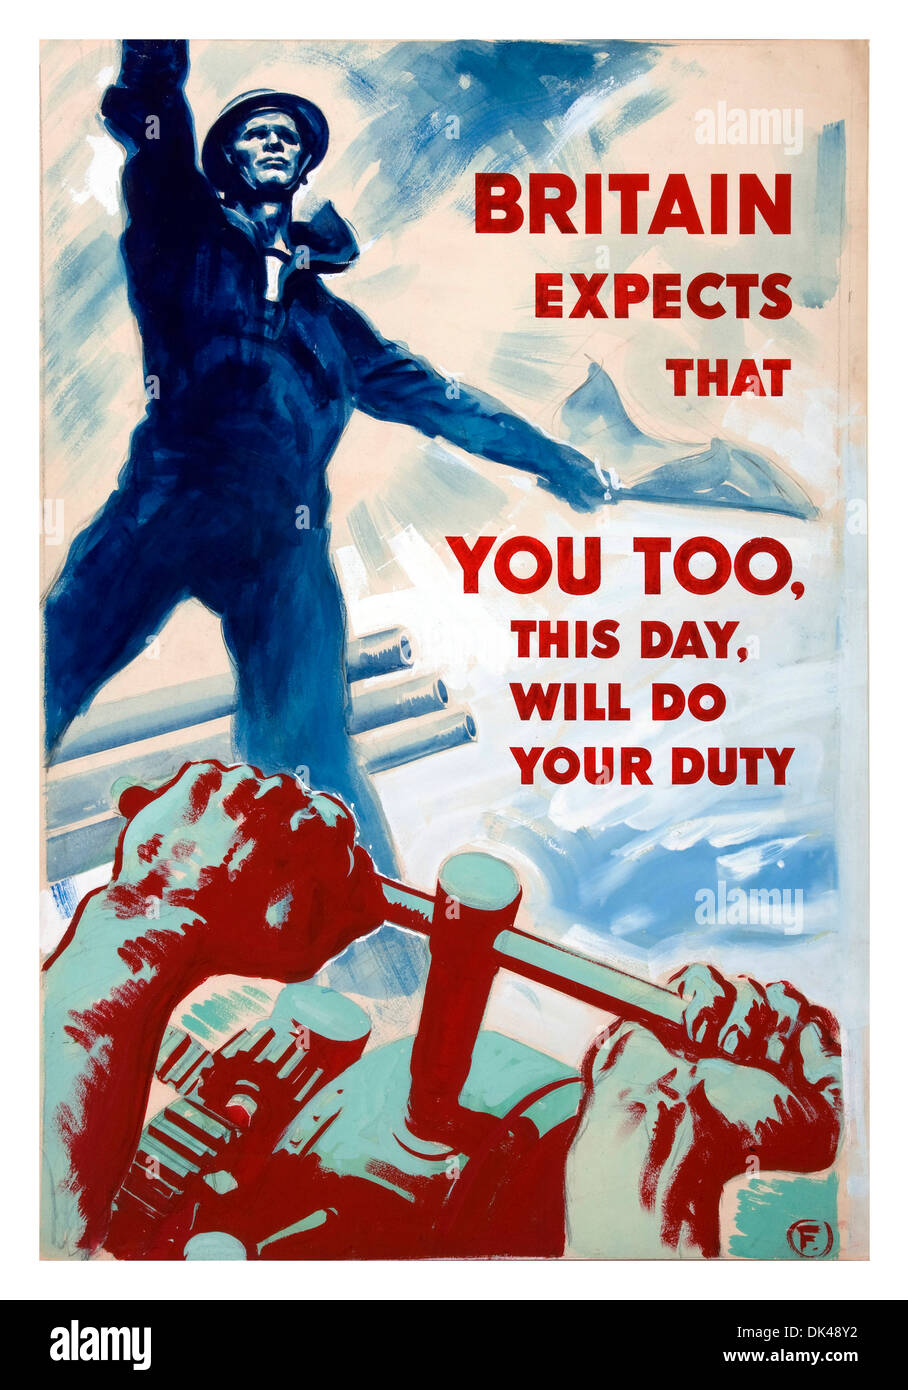 WW2 Propagandaplakat Förderung harten Arbeit zu Hause in Großbritannien während des Krieges mit Lord Nelsons berühmte Worte "Großbritannien erwartet..." Stockfoto